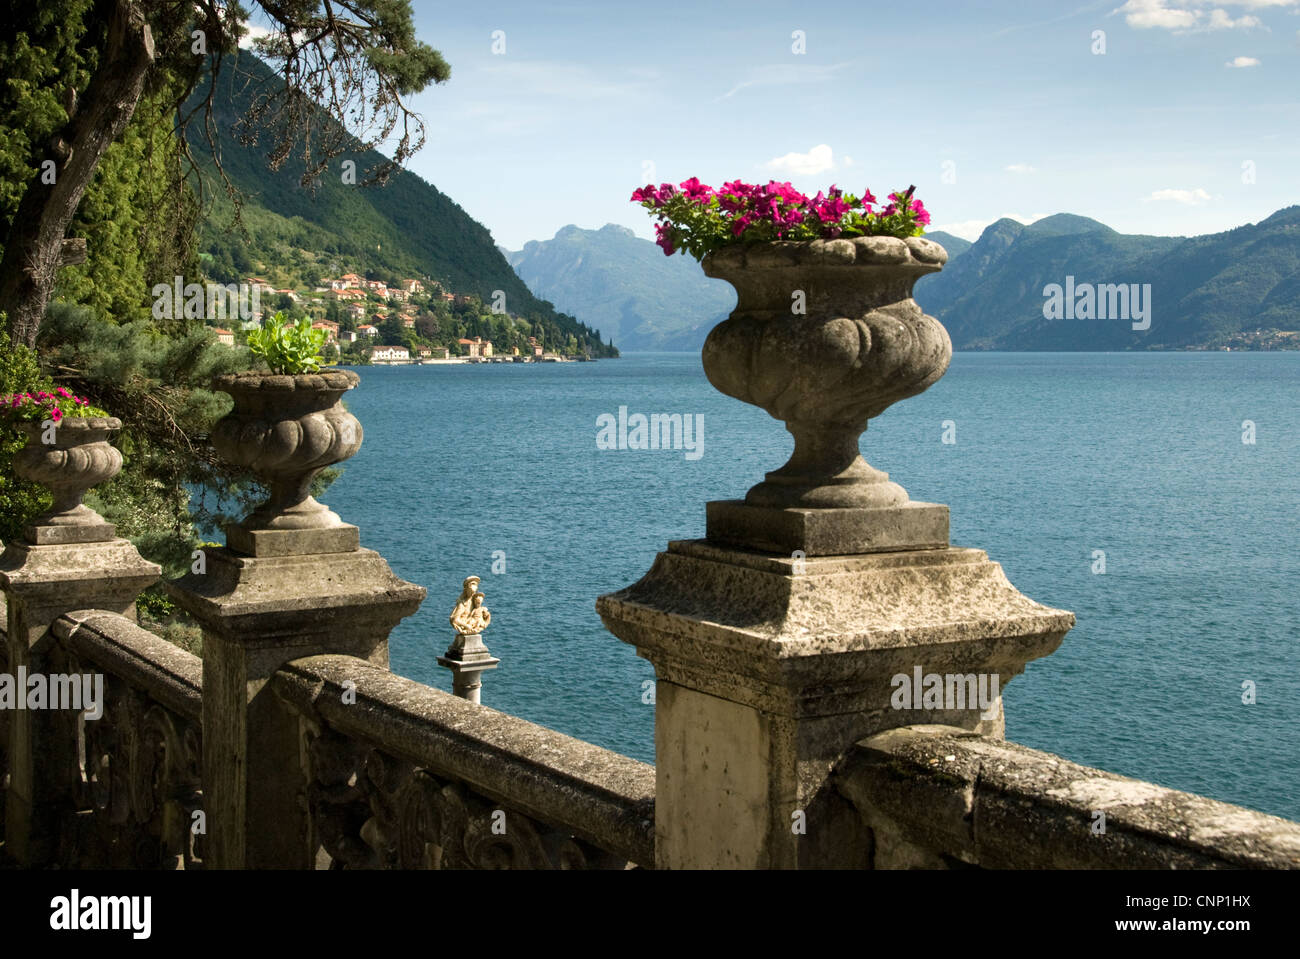 Détails ornementaux à Villa Monastero jardins, lac de Côme, Italie. Banque D'Images